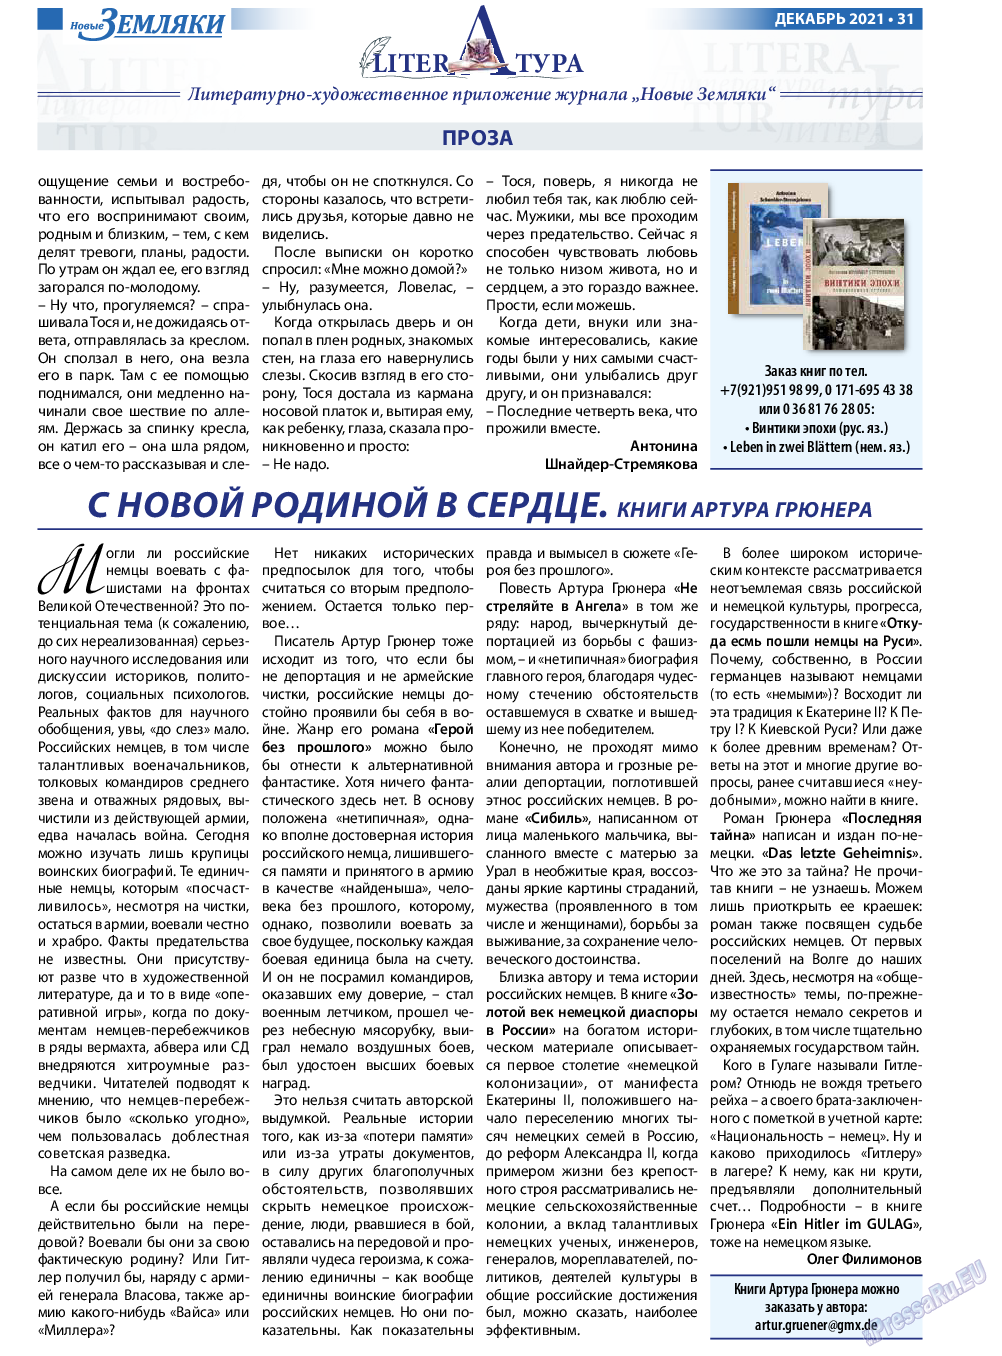 Новые Земляки, газета. 2021 №12 стр.31